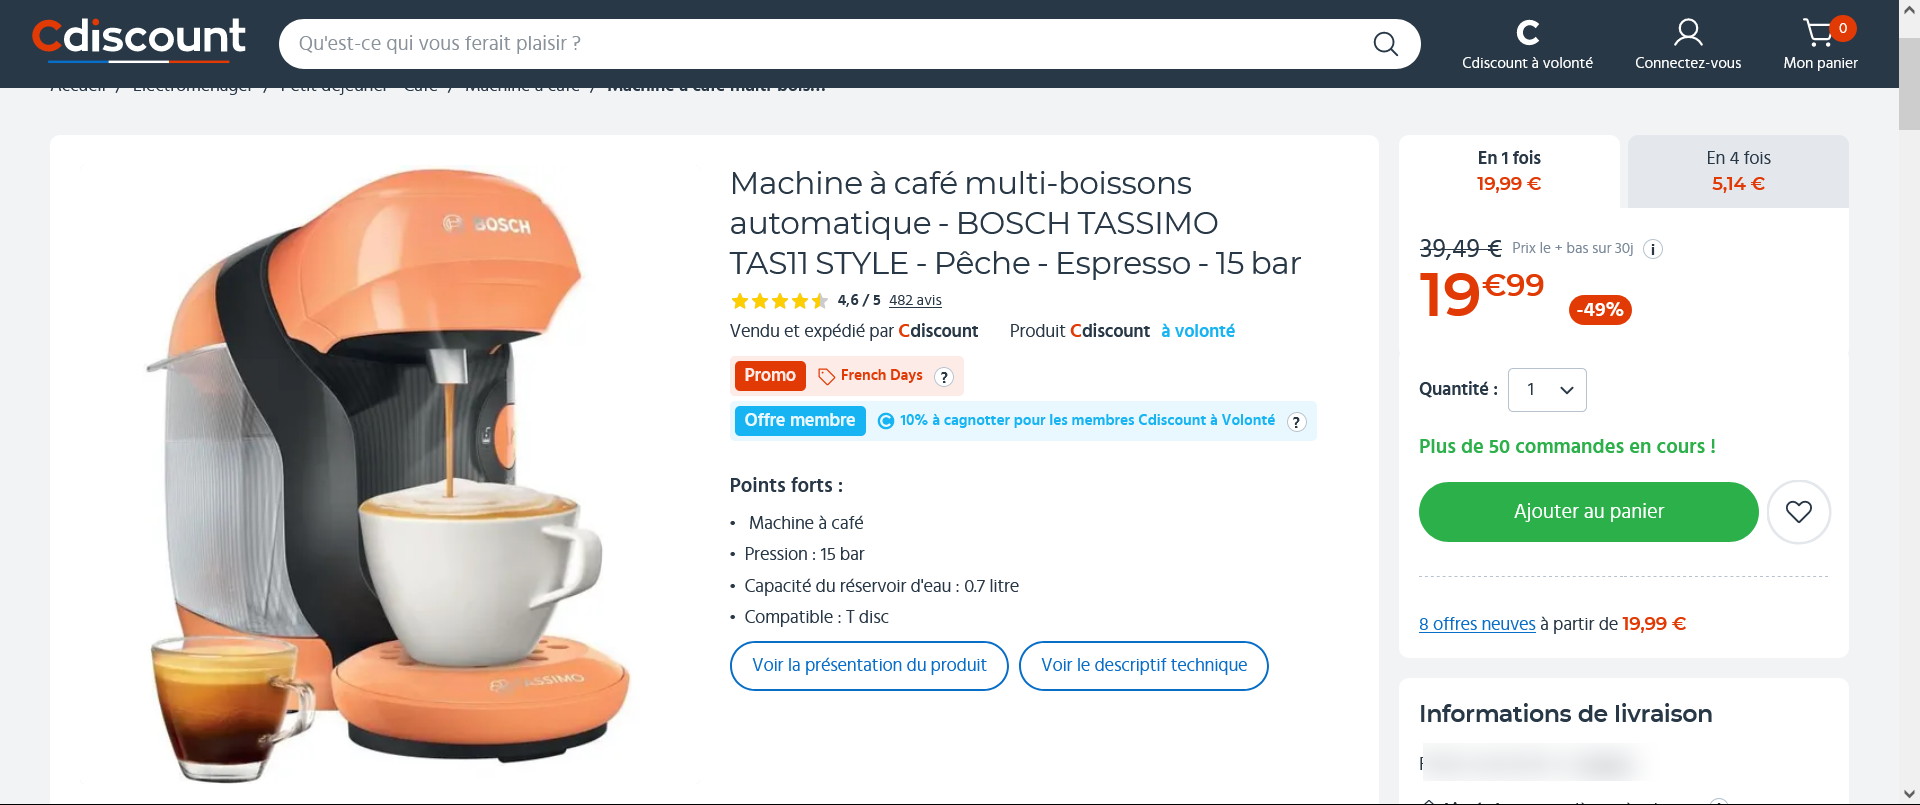 Machine-à-café-multi-boissons-automatique-BOSCH-TASSIMO-TAS11-STYLE-Pêche-Espresso-15-bar-Cdis...png